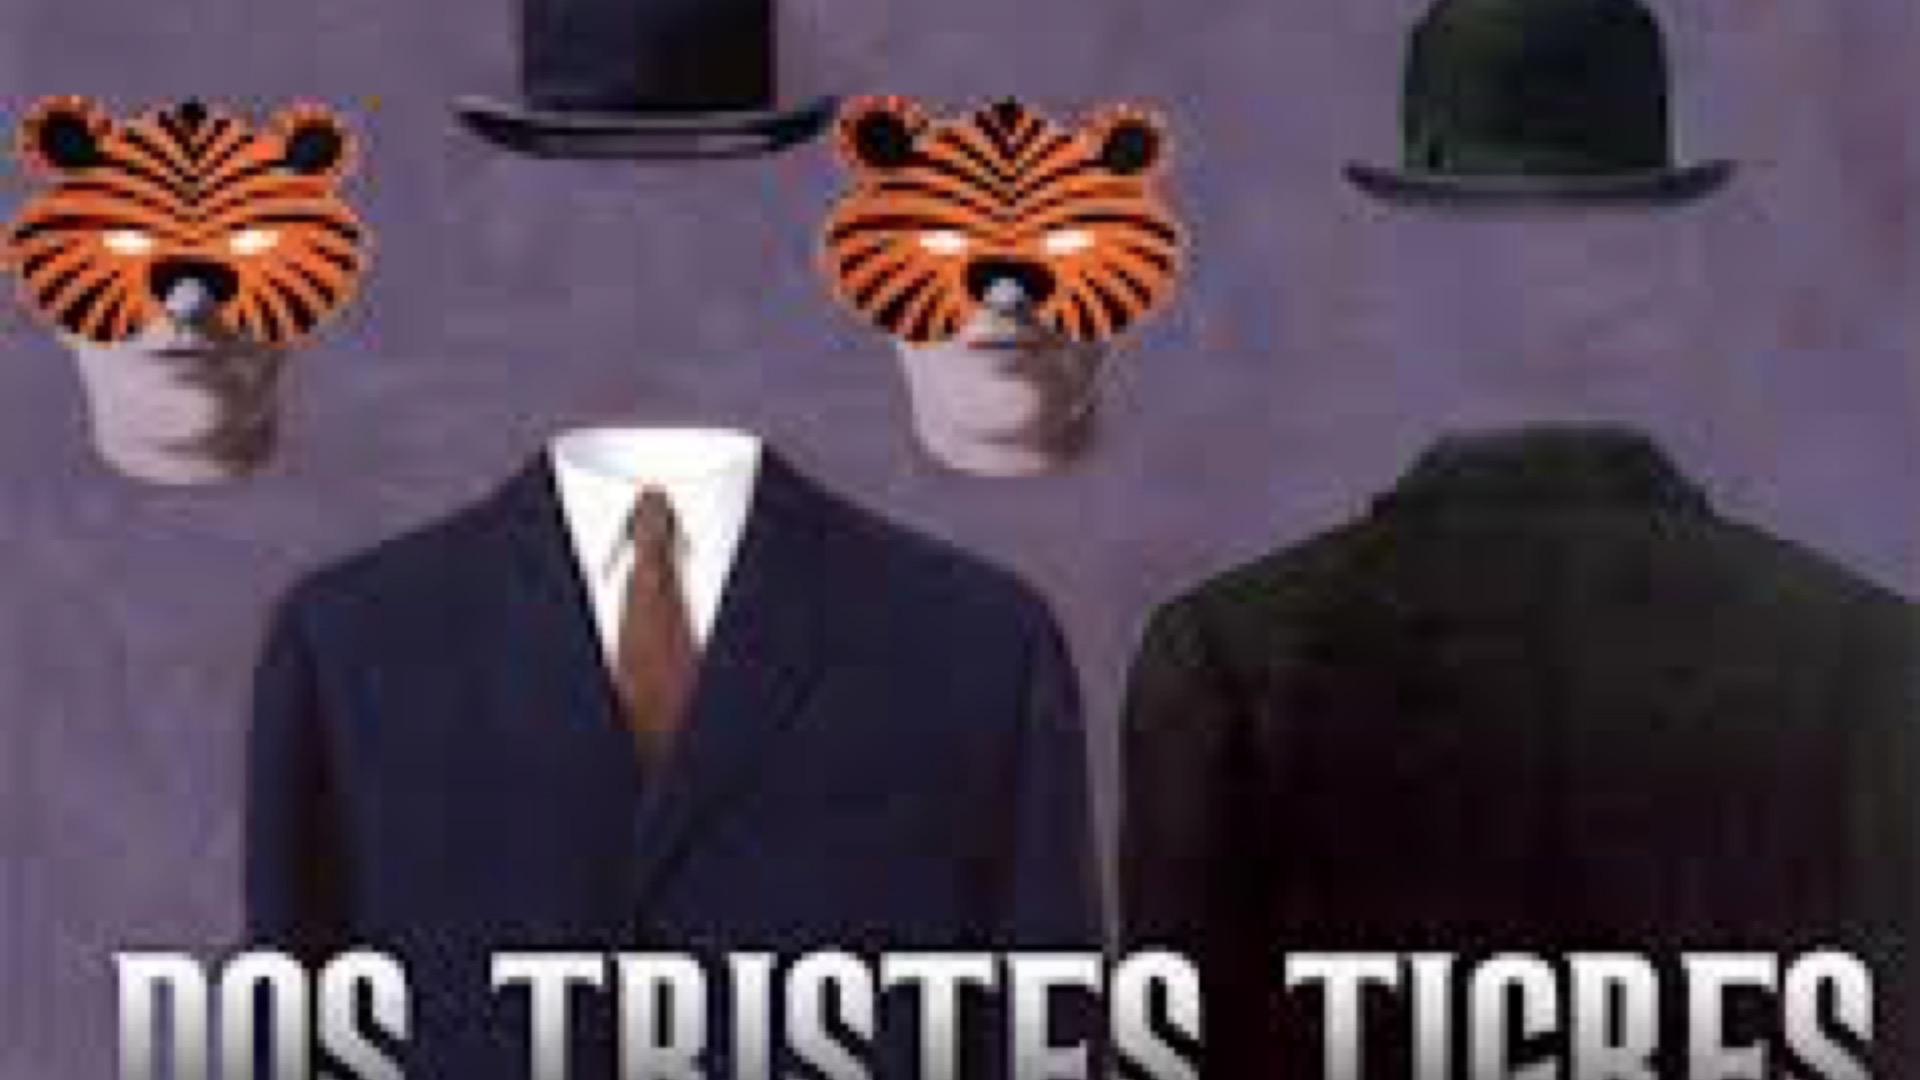 Dos tristes tigres